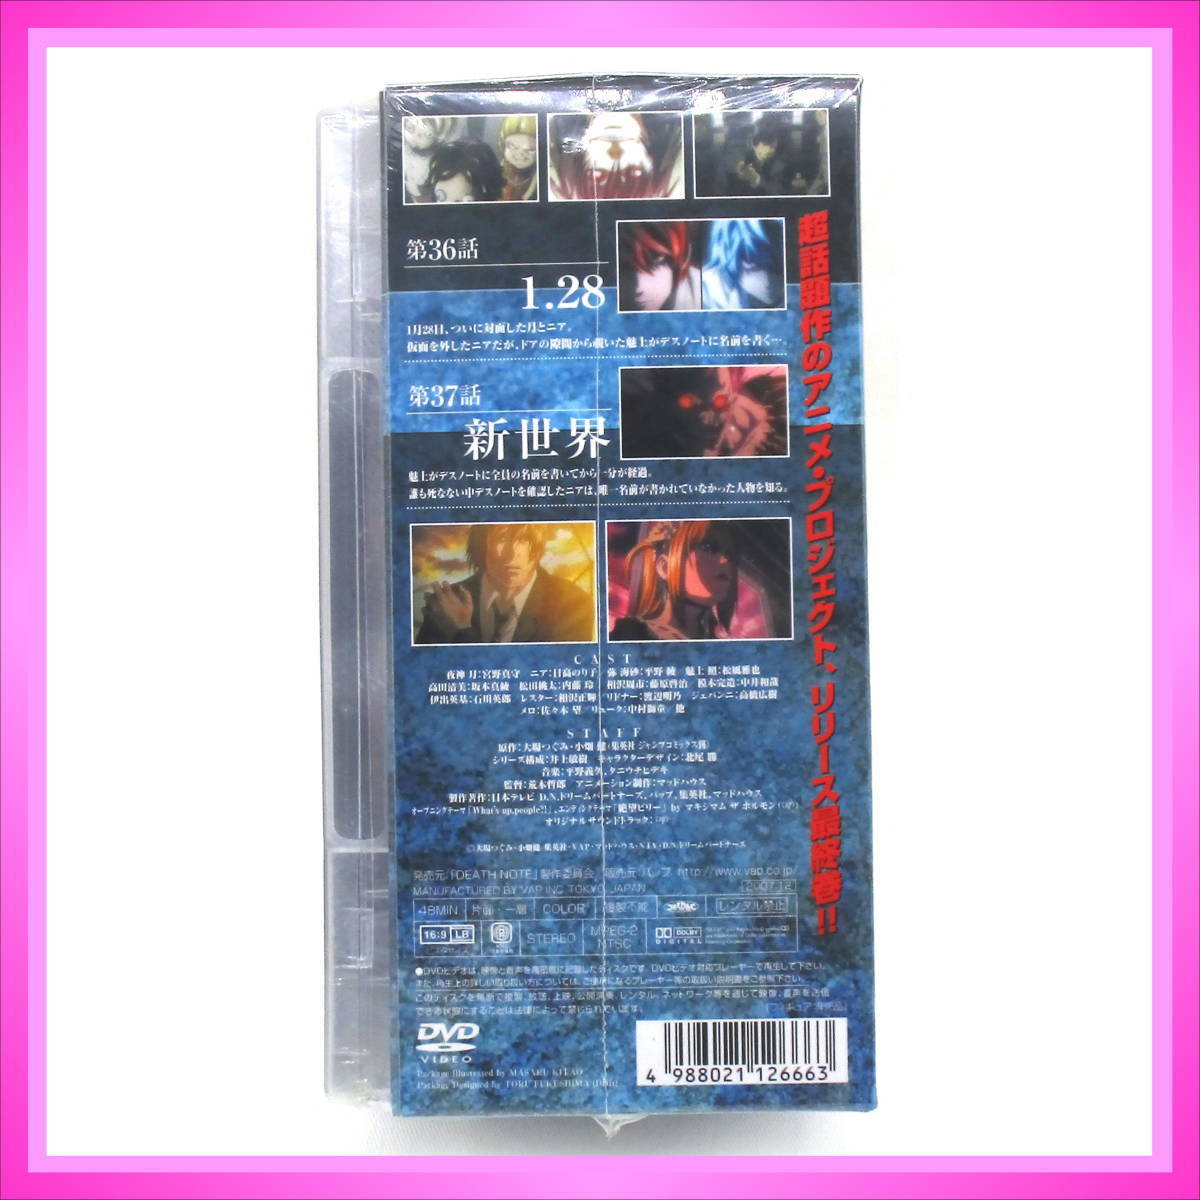 全13種セット 初回限定版DVD付録 デスノート オリジナルフィギュア - janairofausto.com.br